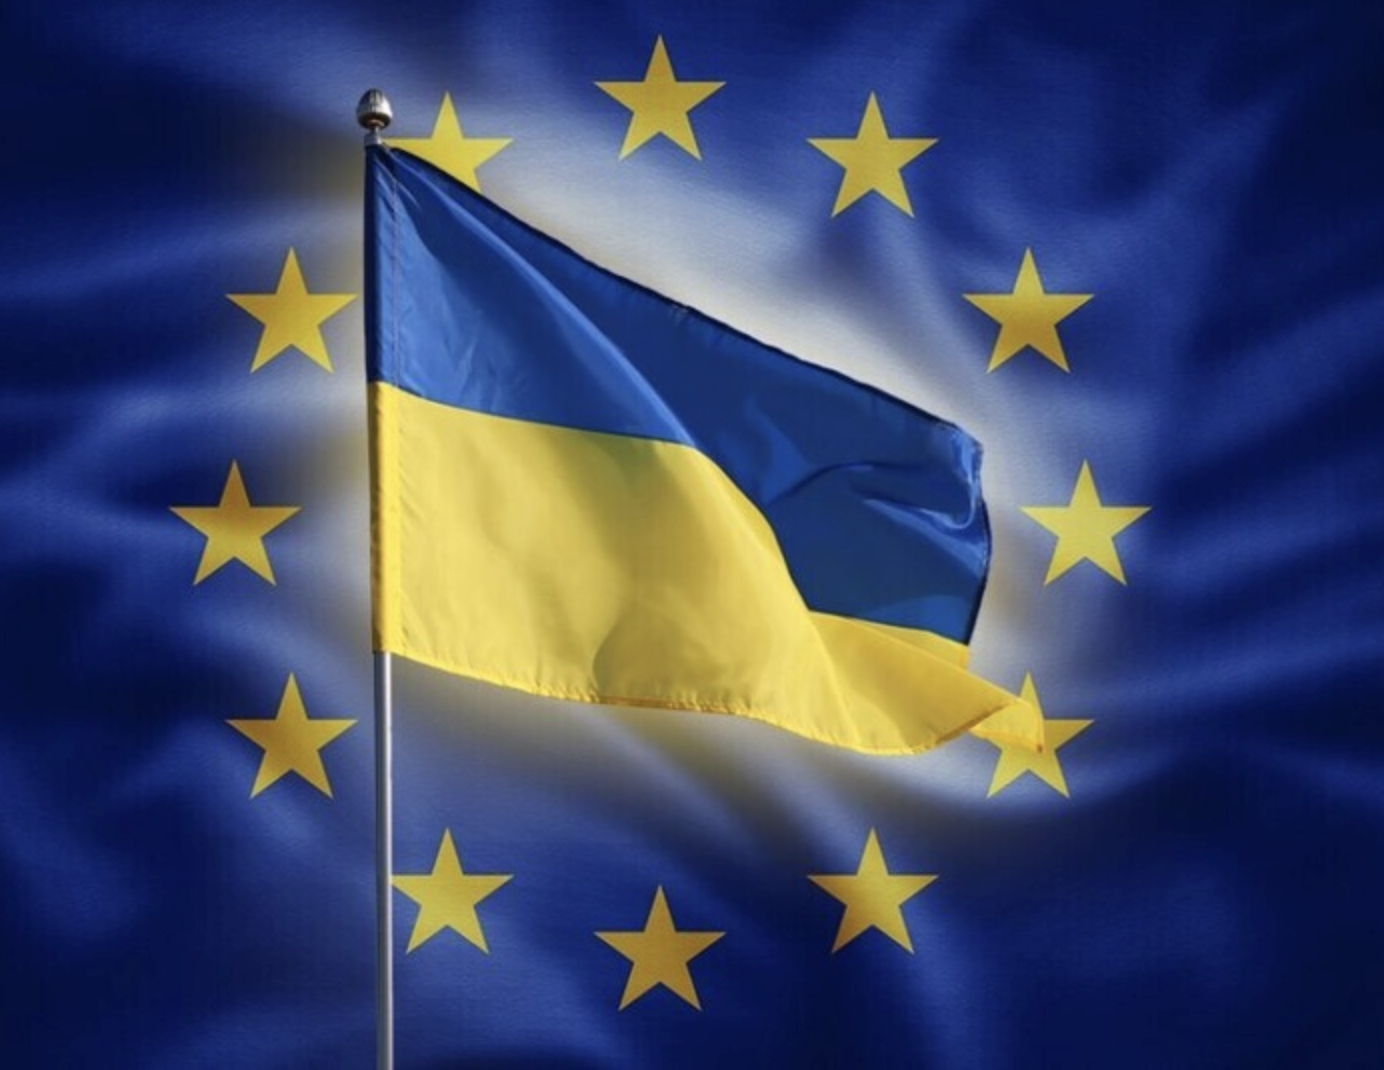 Для України сім країн ЄС замовили артилерійські снаряди, - Reuters